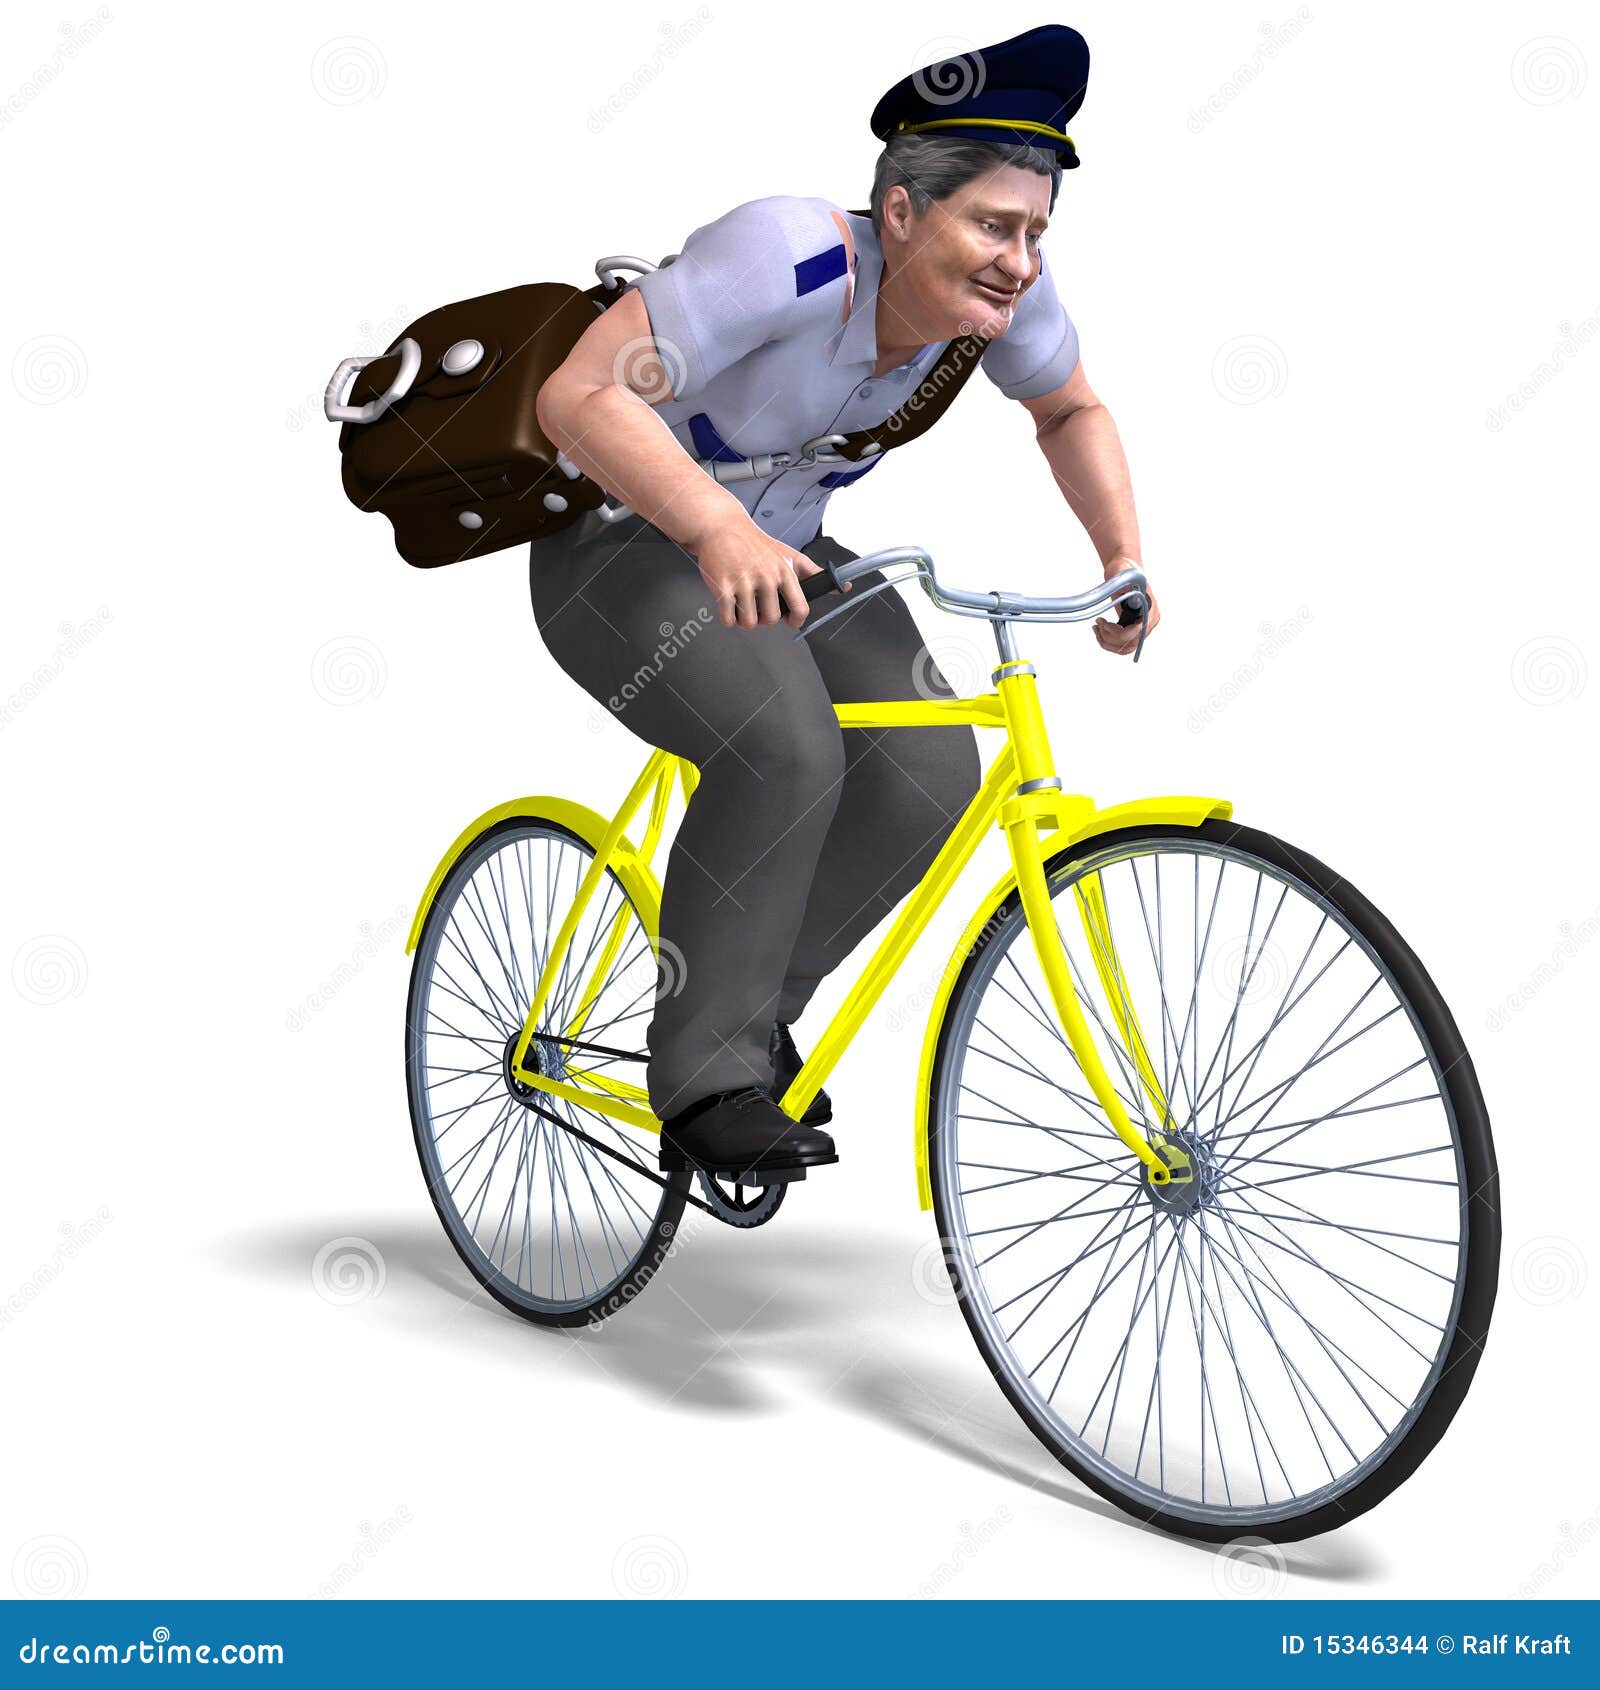 postman on a bike